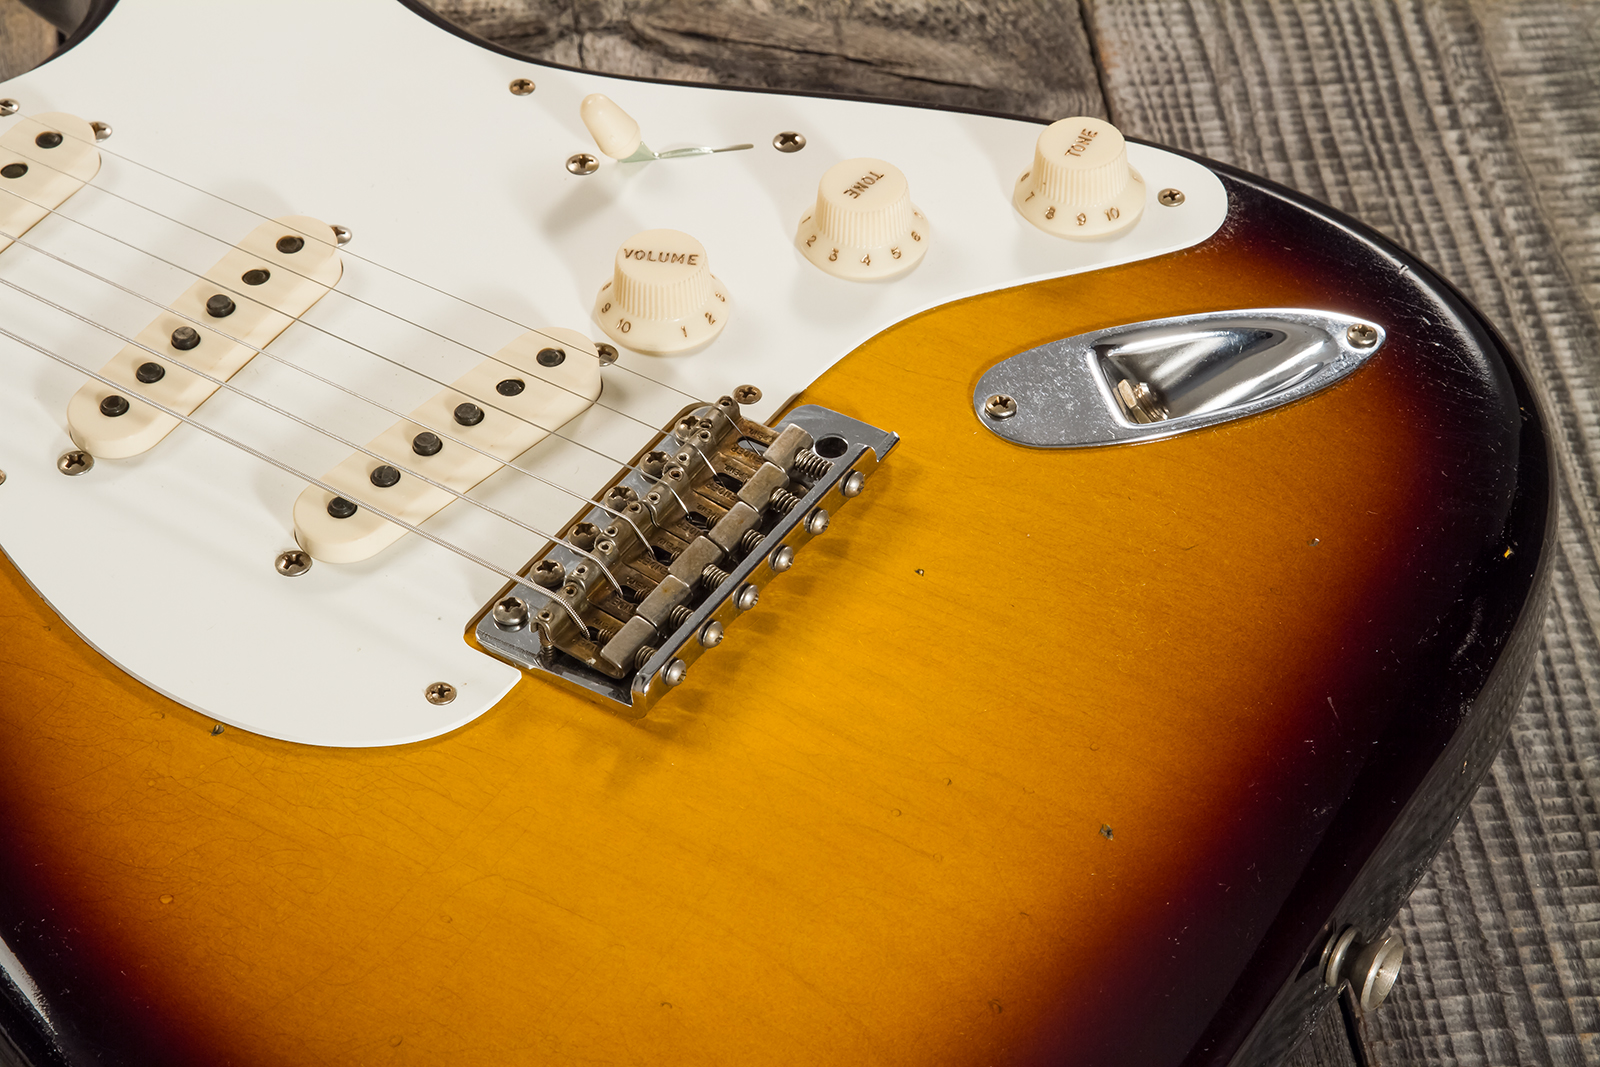 Fender Custom Shop Strat 1956 3s Trem Mn #cz570281 - Journeyman Relic Aged 2-color Sunburst - E-Gitarre in Str-Form - Variation 4